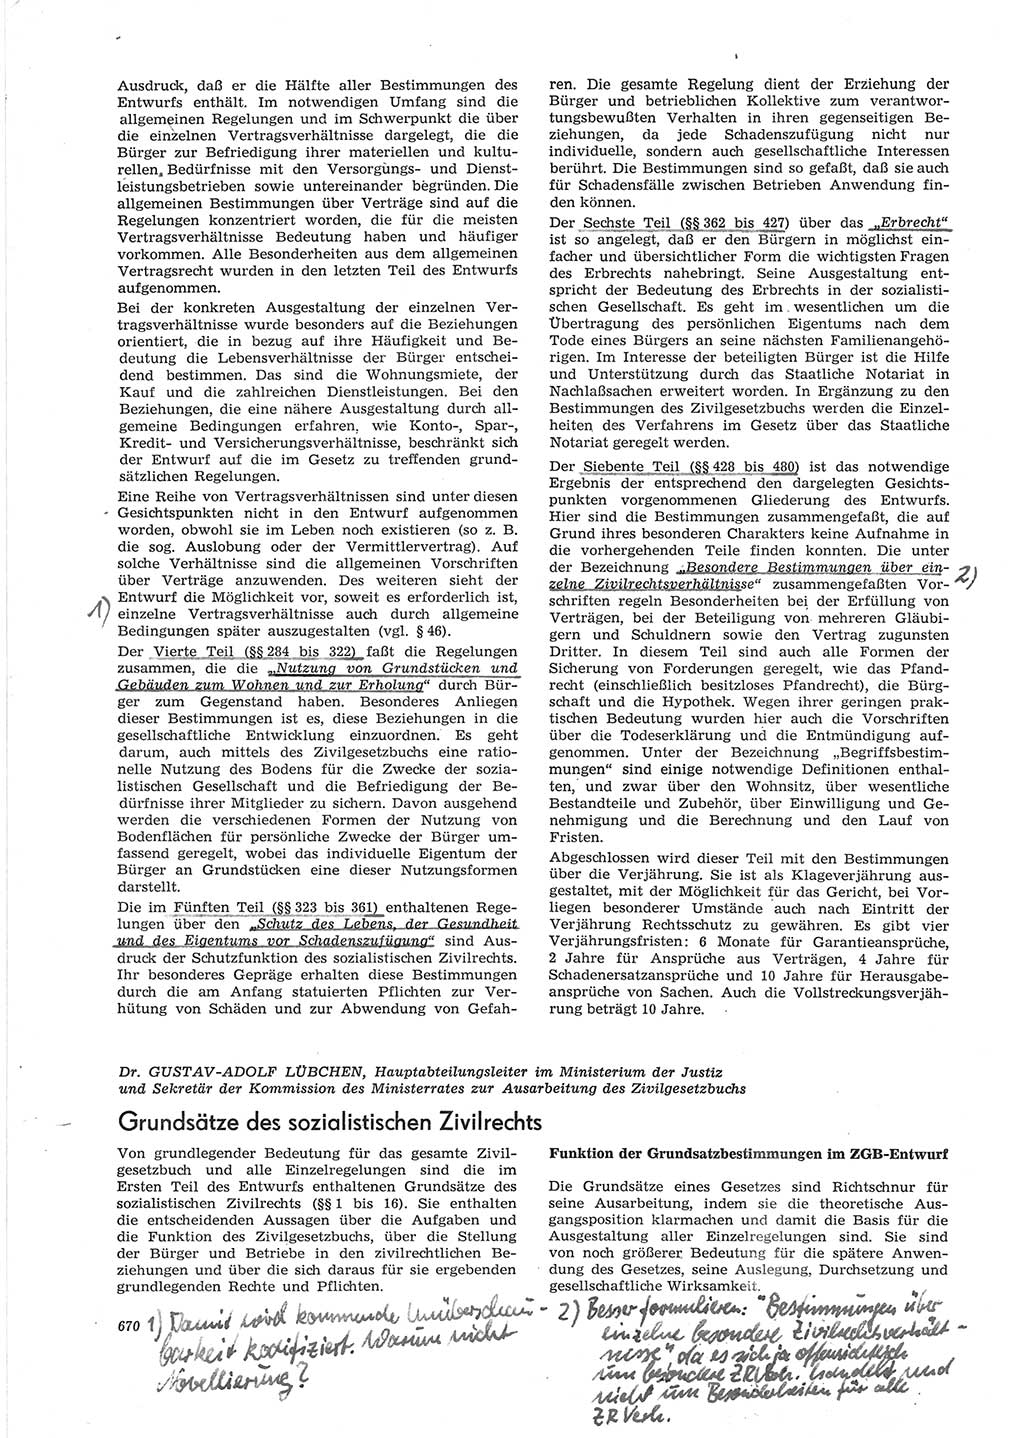 Neue Justiz (NJ), Zeitschrift für Recht und Rechtswissenschaft [Deutsche Demokratische Republik (DDR)], 28. Jahrgang 1974, Seite 670 (NJ DDR 1974, S. 670)